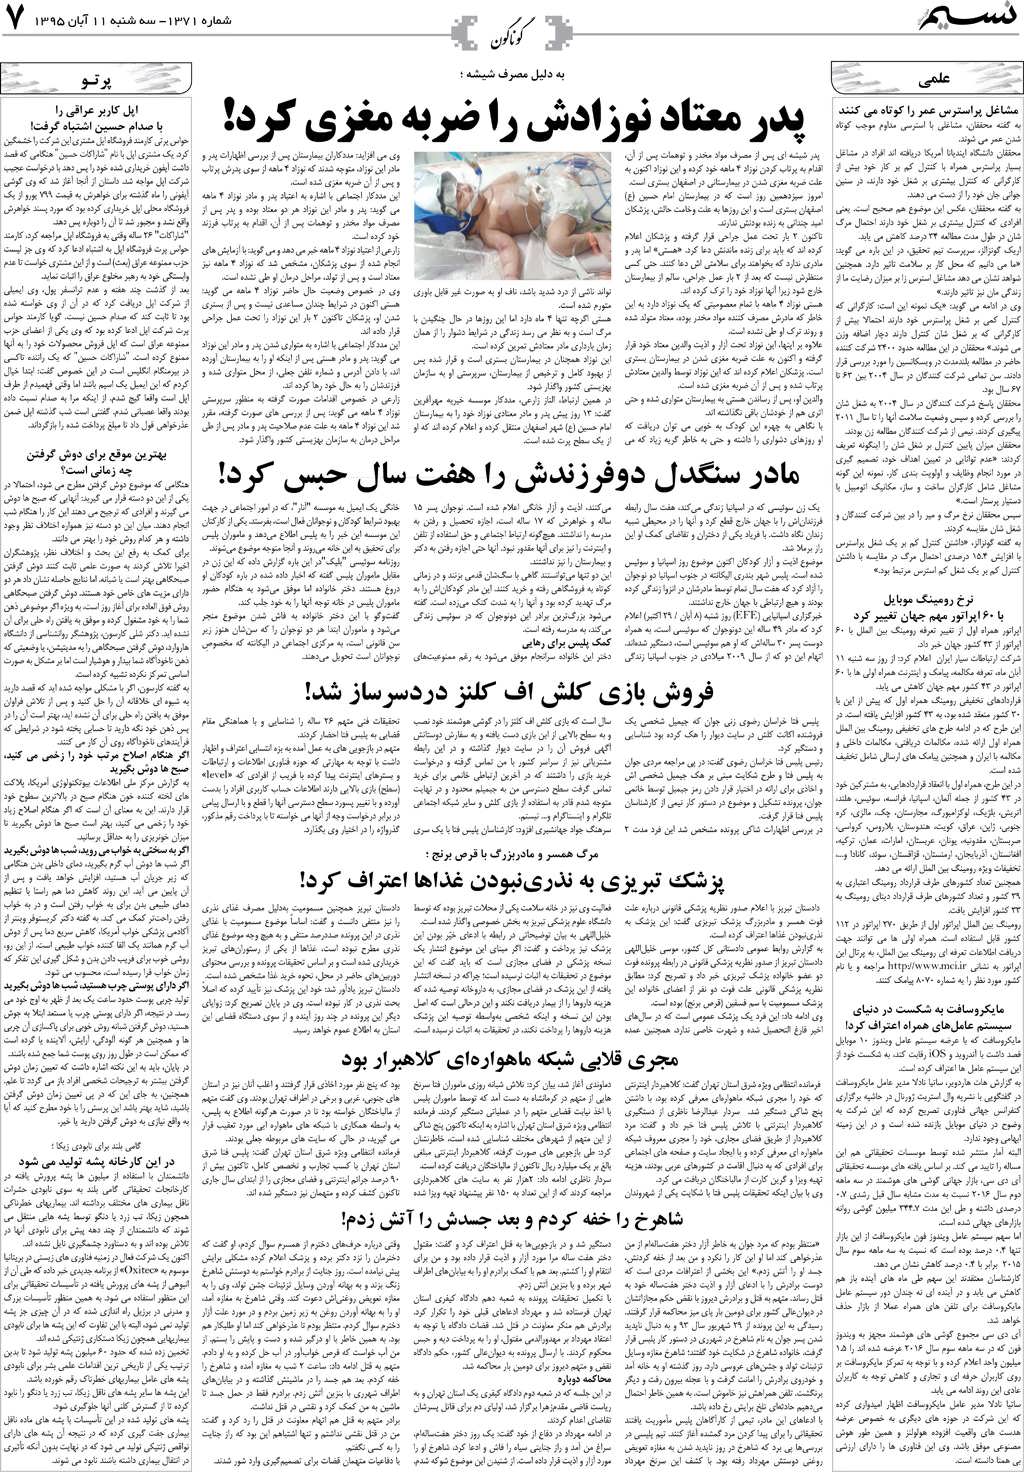 صفحه گوناگون روزنامه نسیم شماره 1371